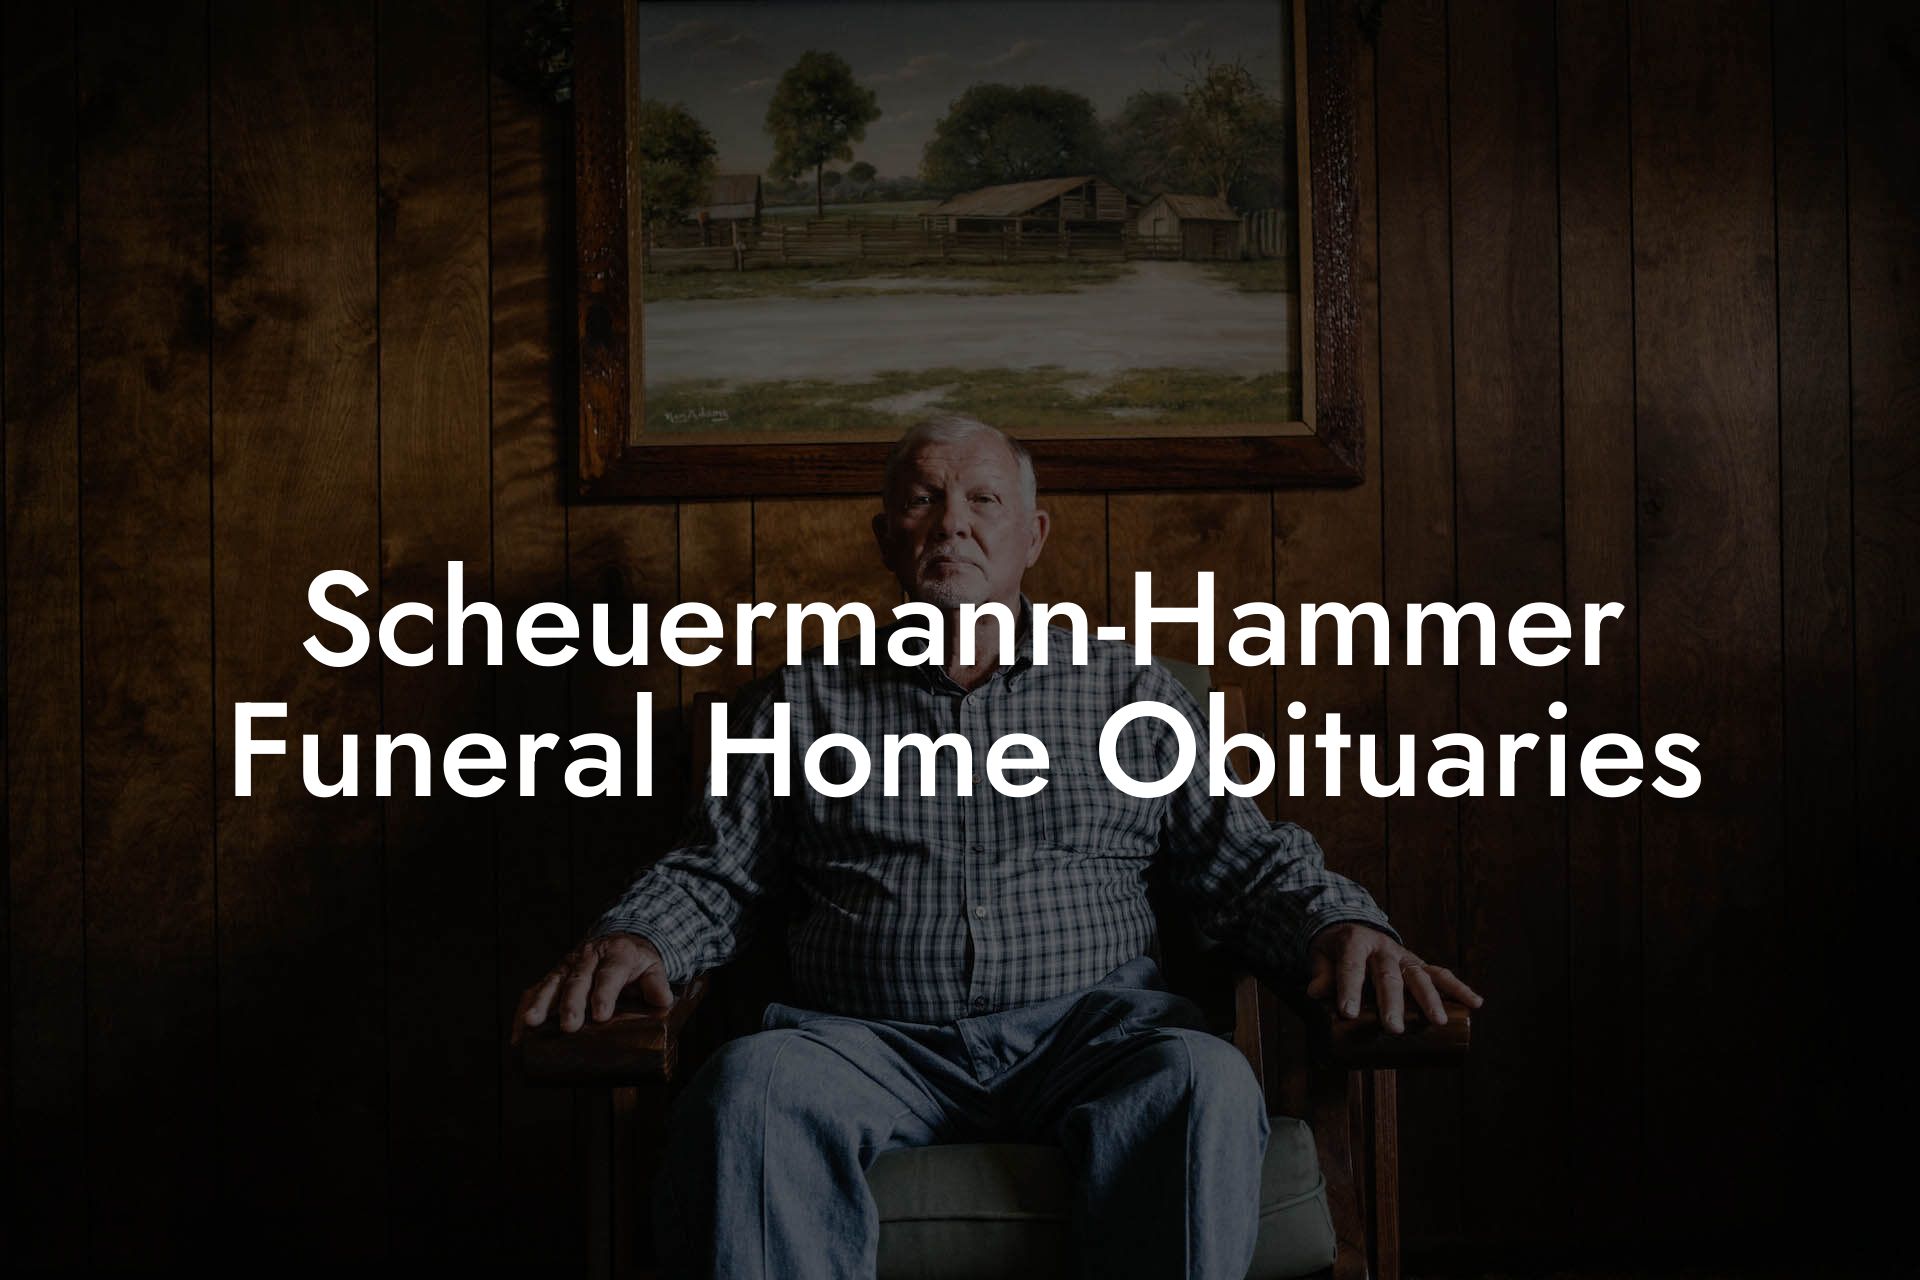 Scheuermann-Hammer Funeral Home Obituaries